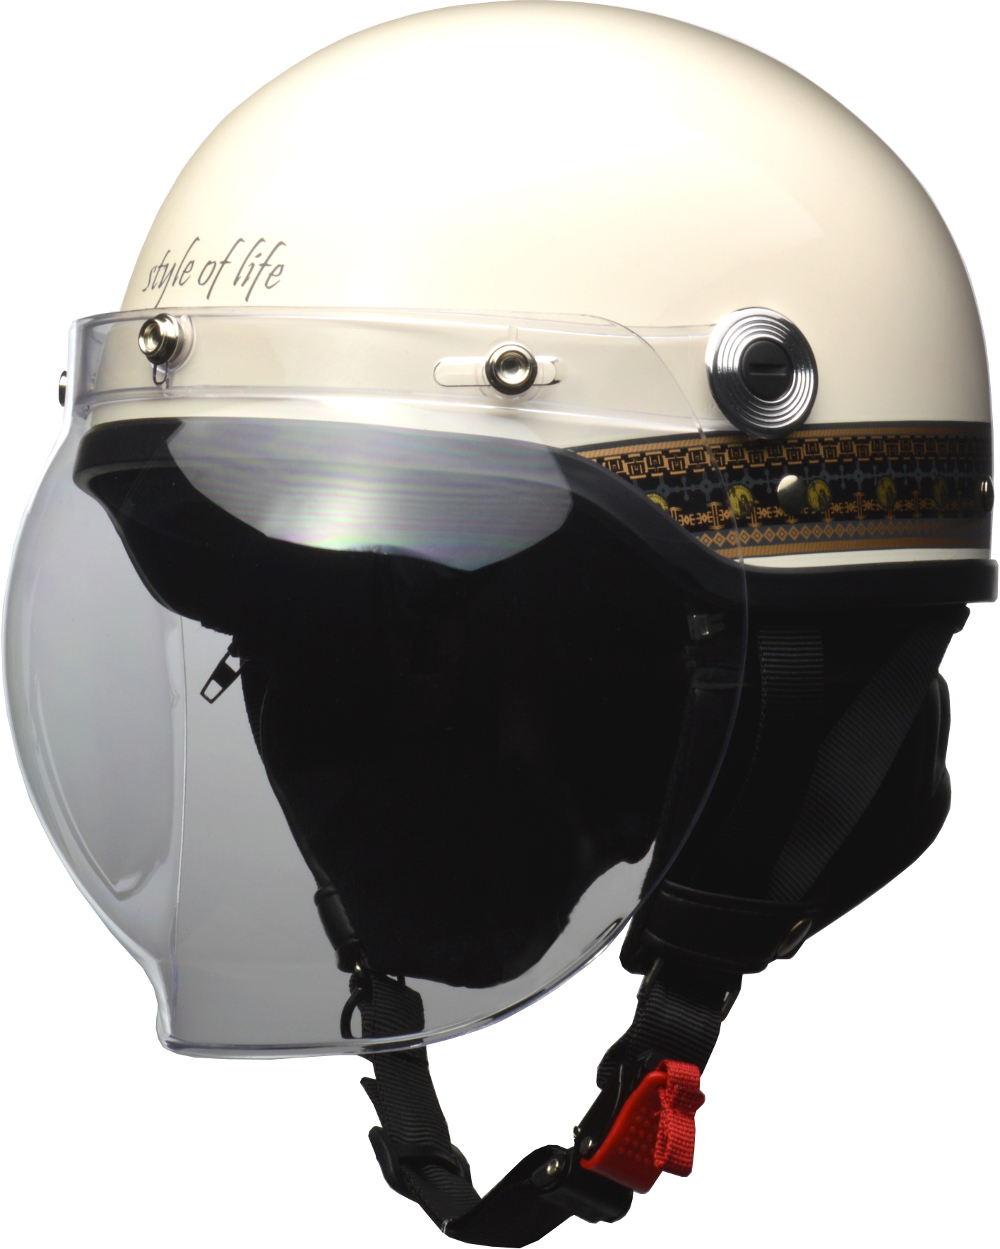 リード工業 LEAD バイクヘルメット ハーフ CROSS 57-60cm未満 捧呈 バブルシールド付き ハイクオリティ CR-760 フリーサイズ エスニックアイボリー